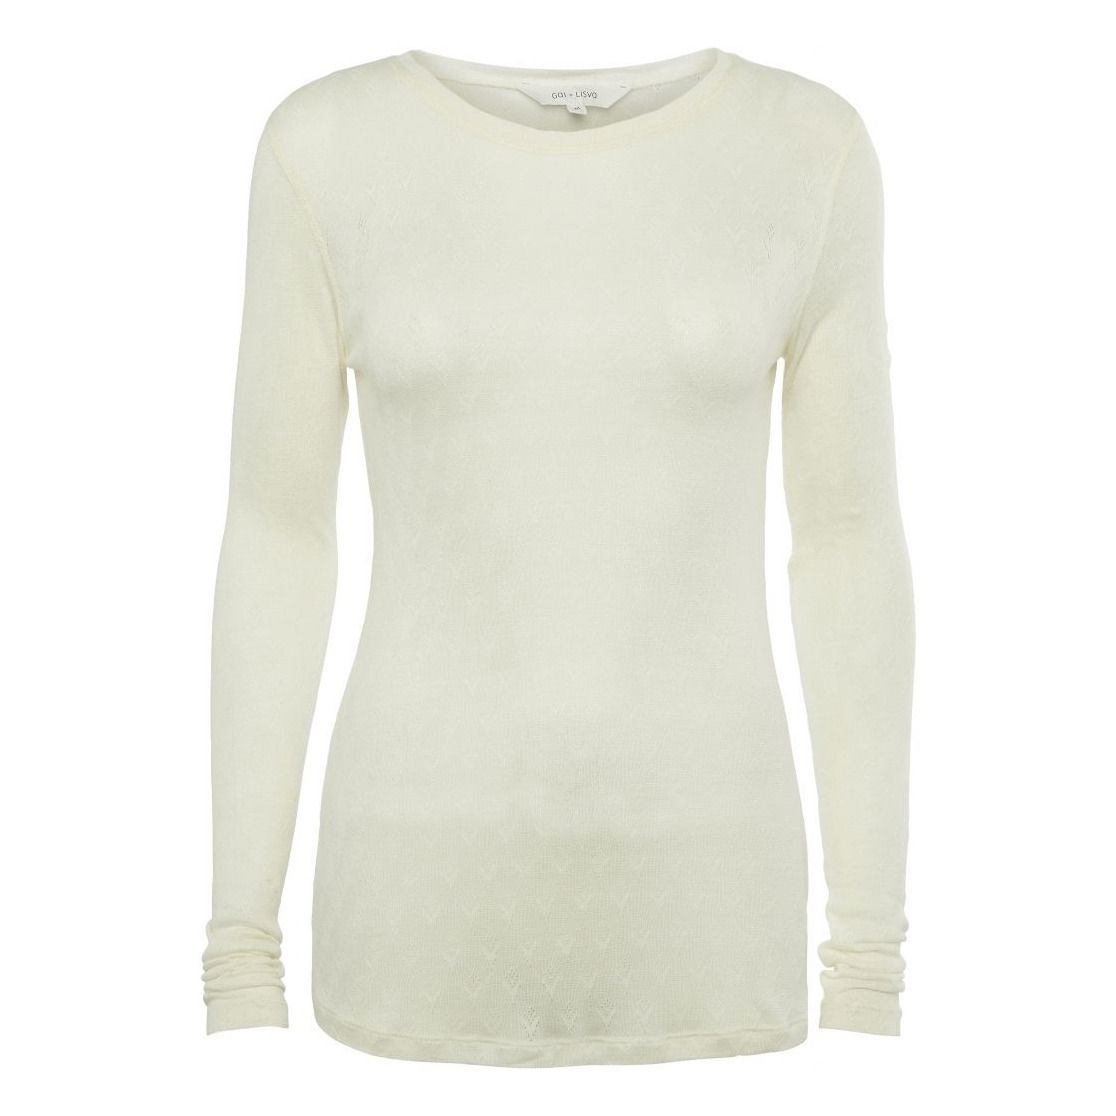 GAI+LISVA - T-Shirt Fermi - Femme - Blanc cassé